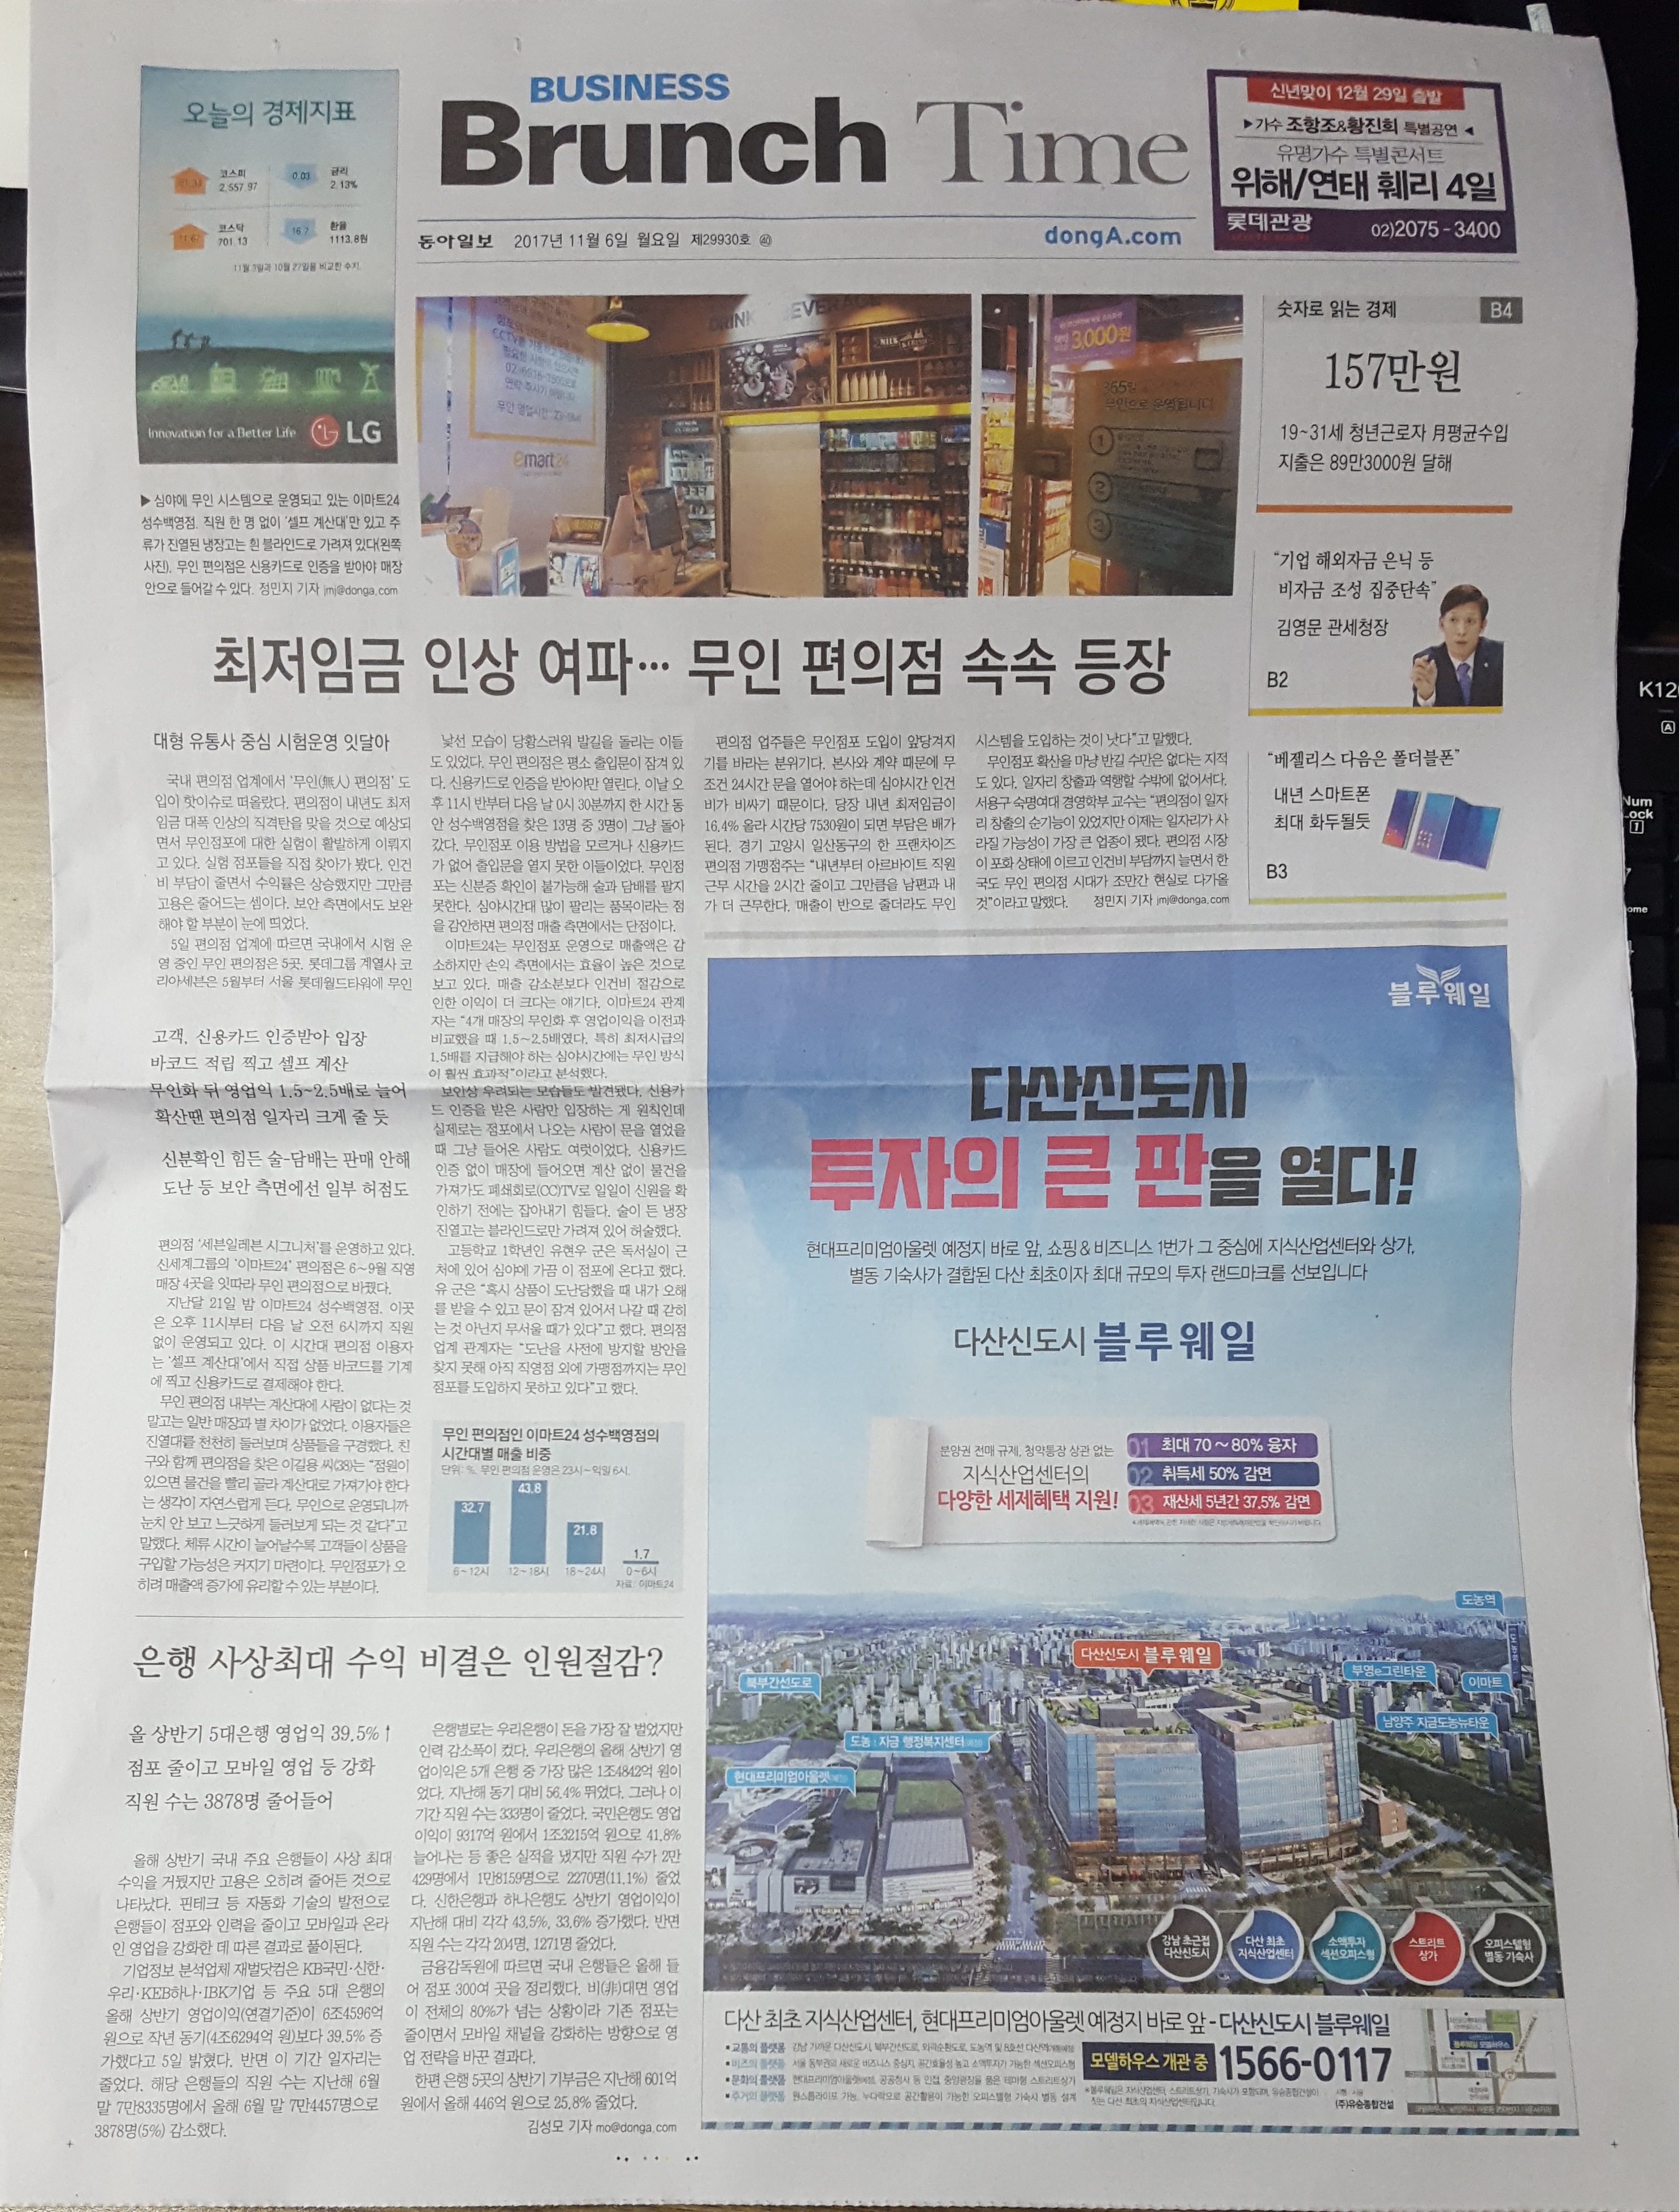 11월 6일 중앙일보 B1 다산신도시 블루웨일 - 전면.jpg